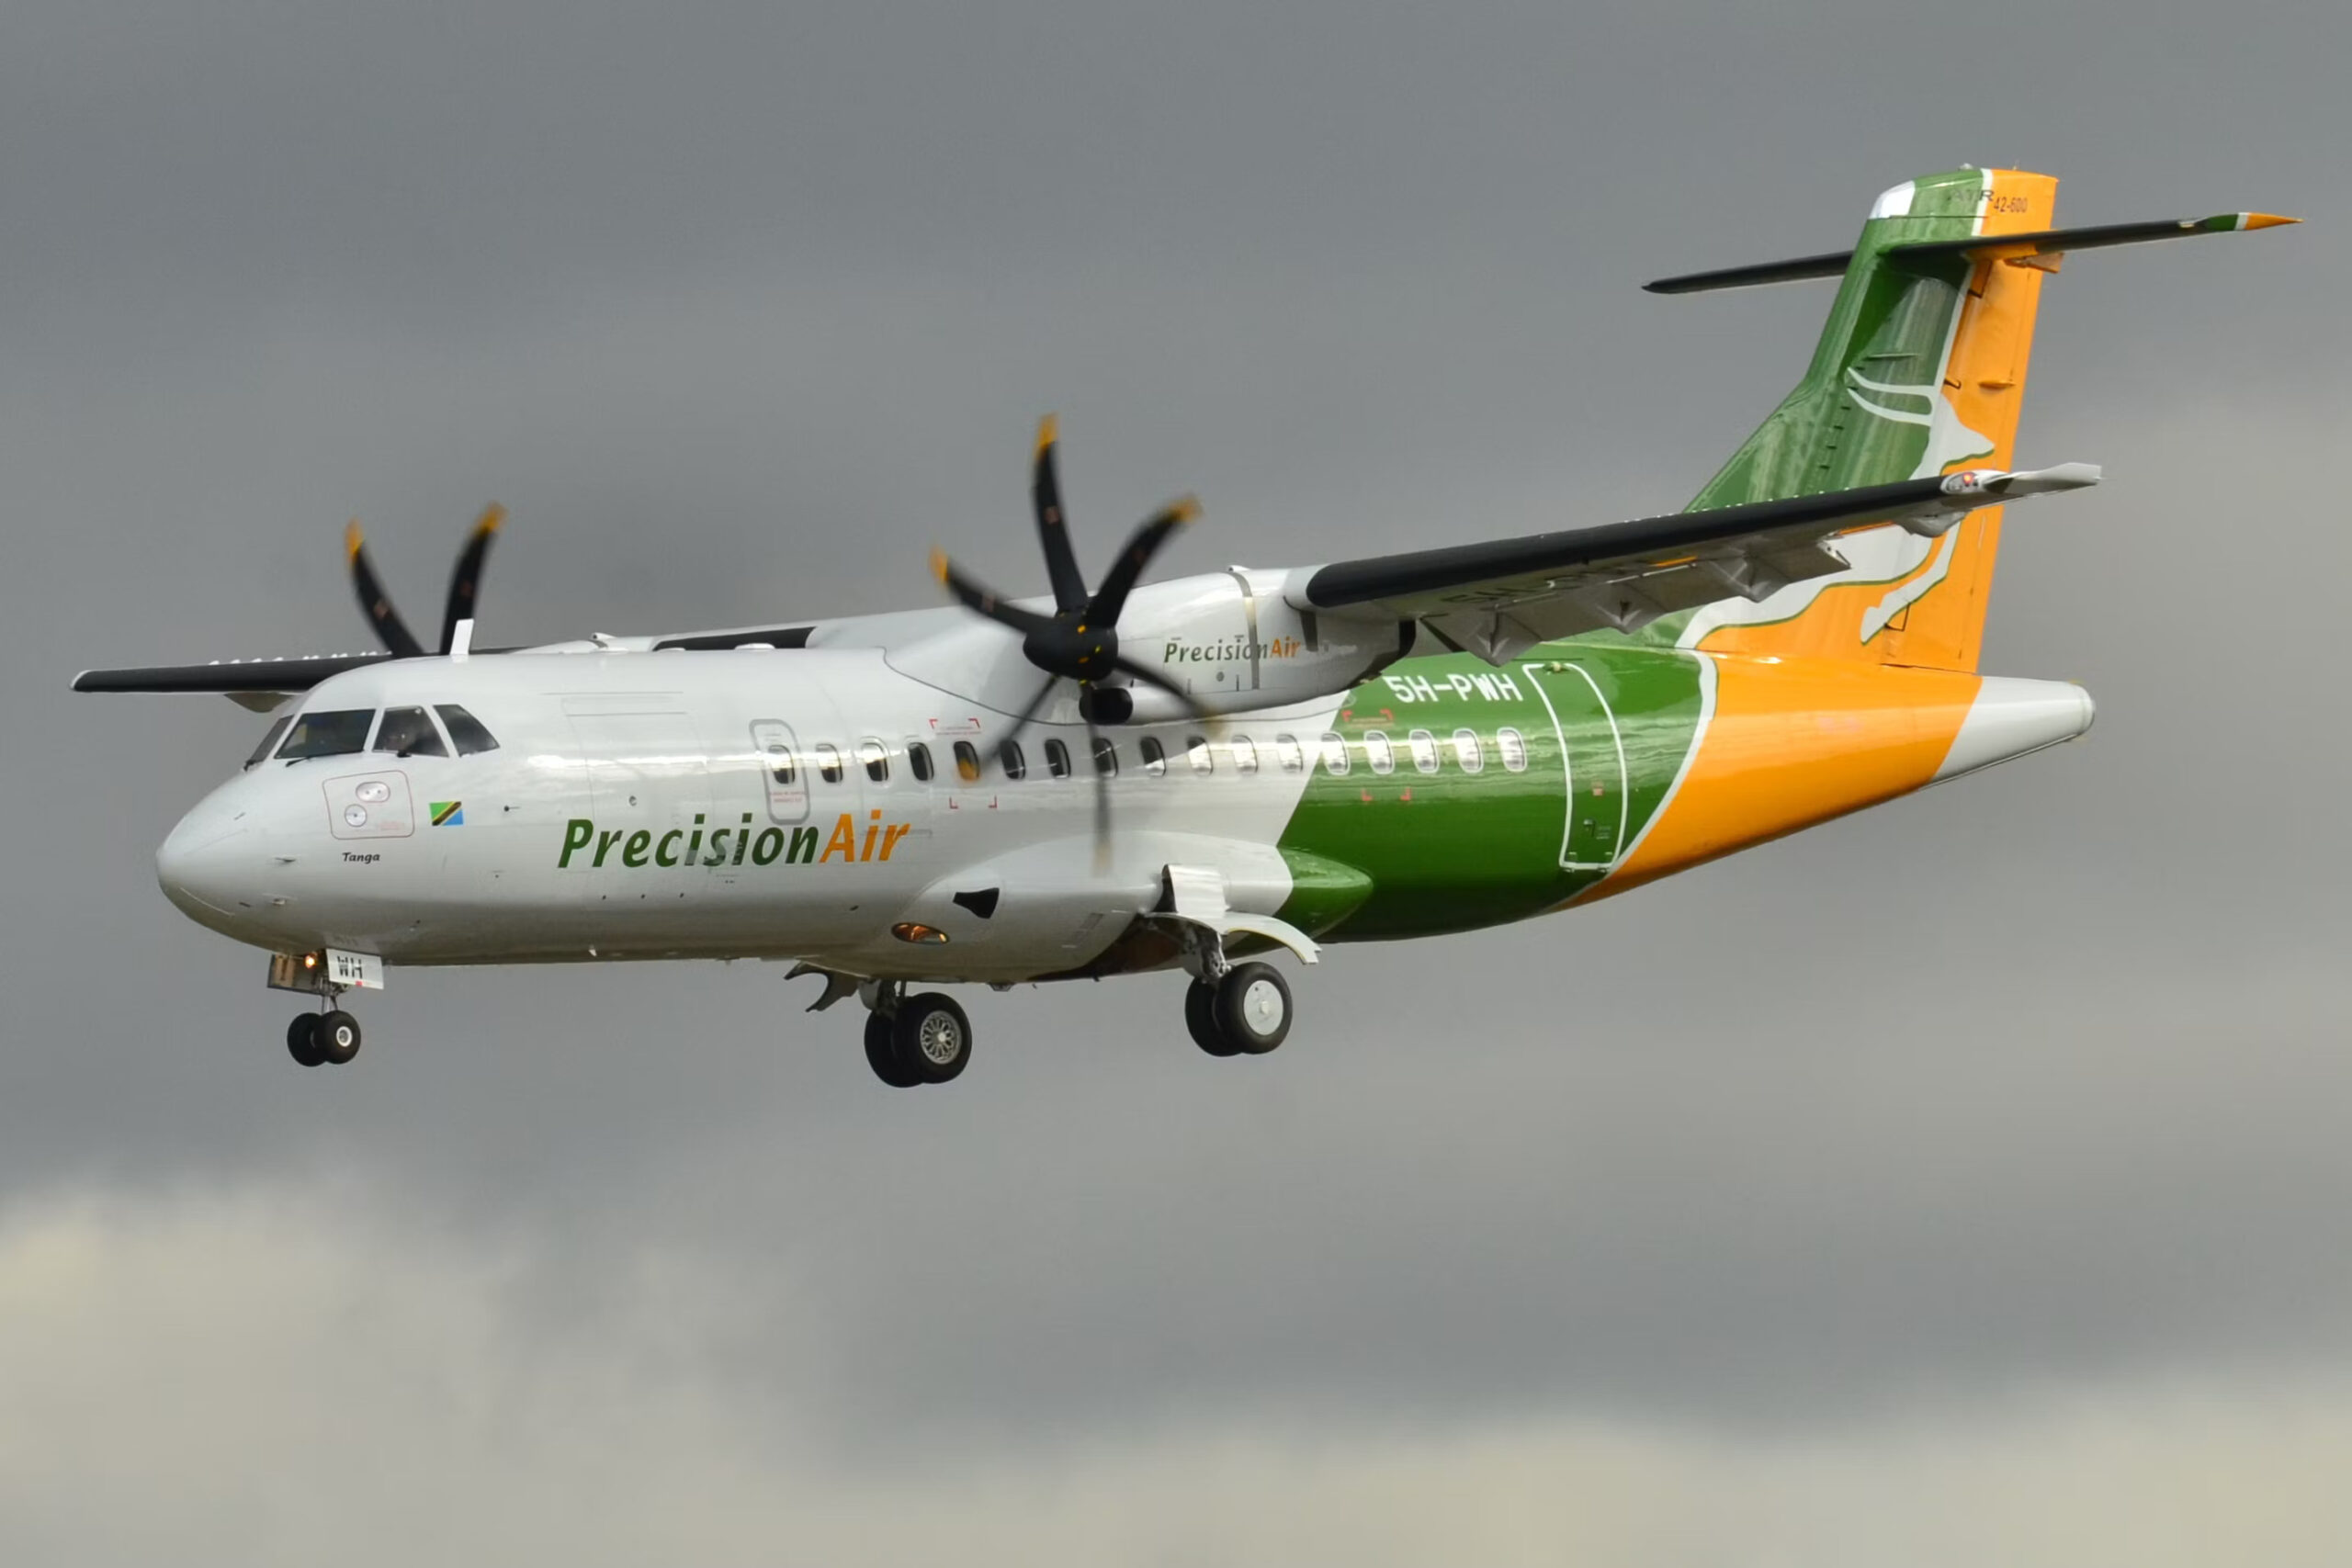 Precision Air ATR 42 Lake Crash: What We Know So Far